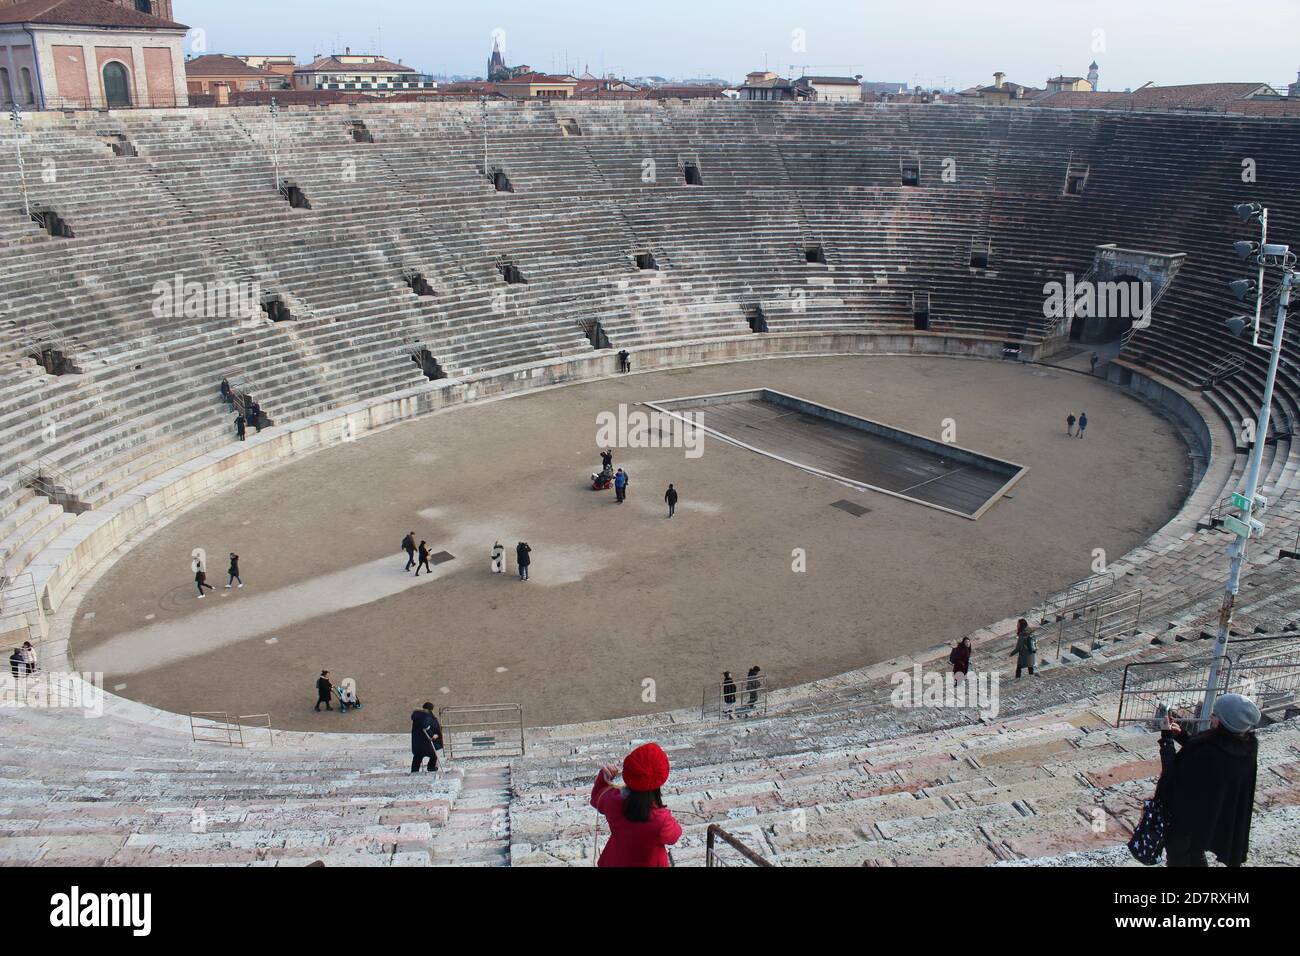 Vista dall'alto dell'interno dell'arena di Verona Foto Stock